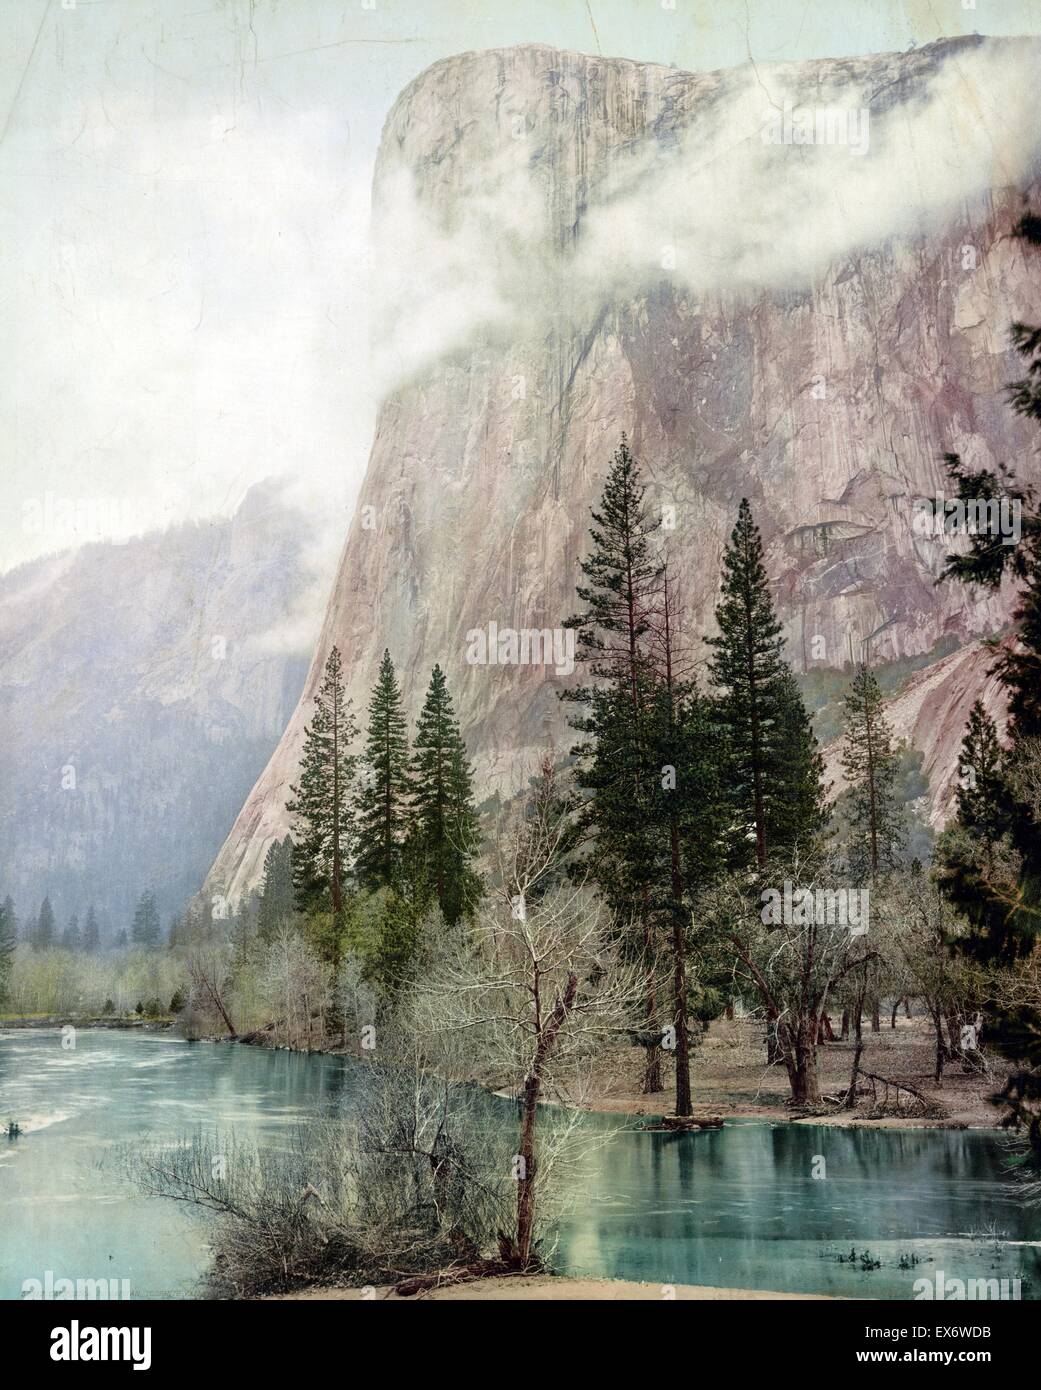 Impression photomécanique de la vallée de Yosemite, El Captain, en Californie. Photographié par William Henry Jackson (1843-1942). Datée 1899 Banque D'Images